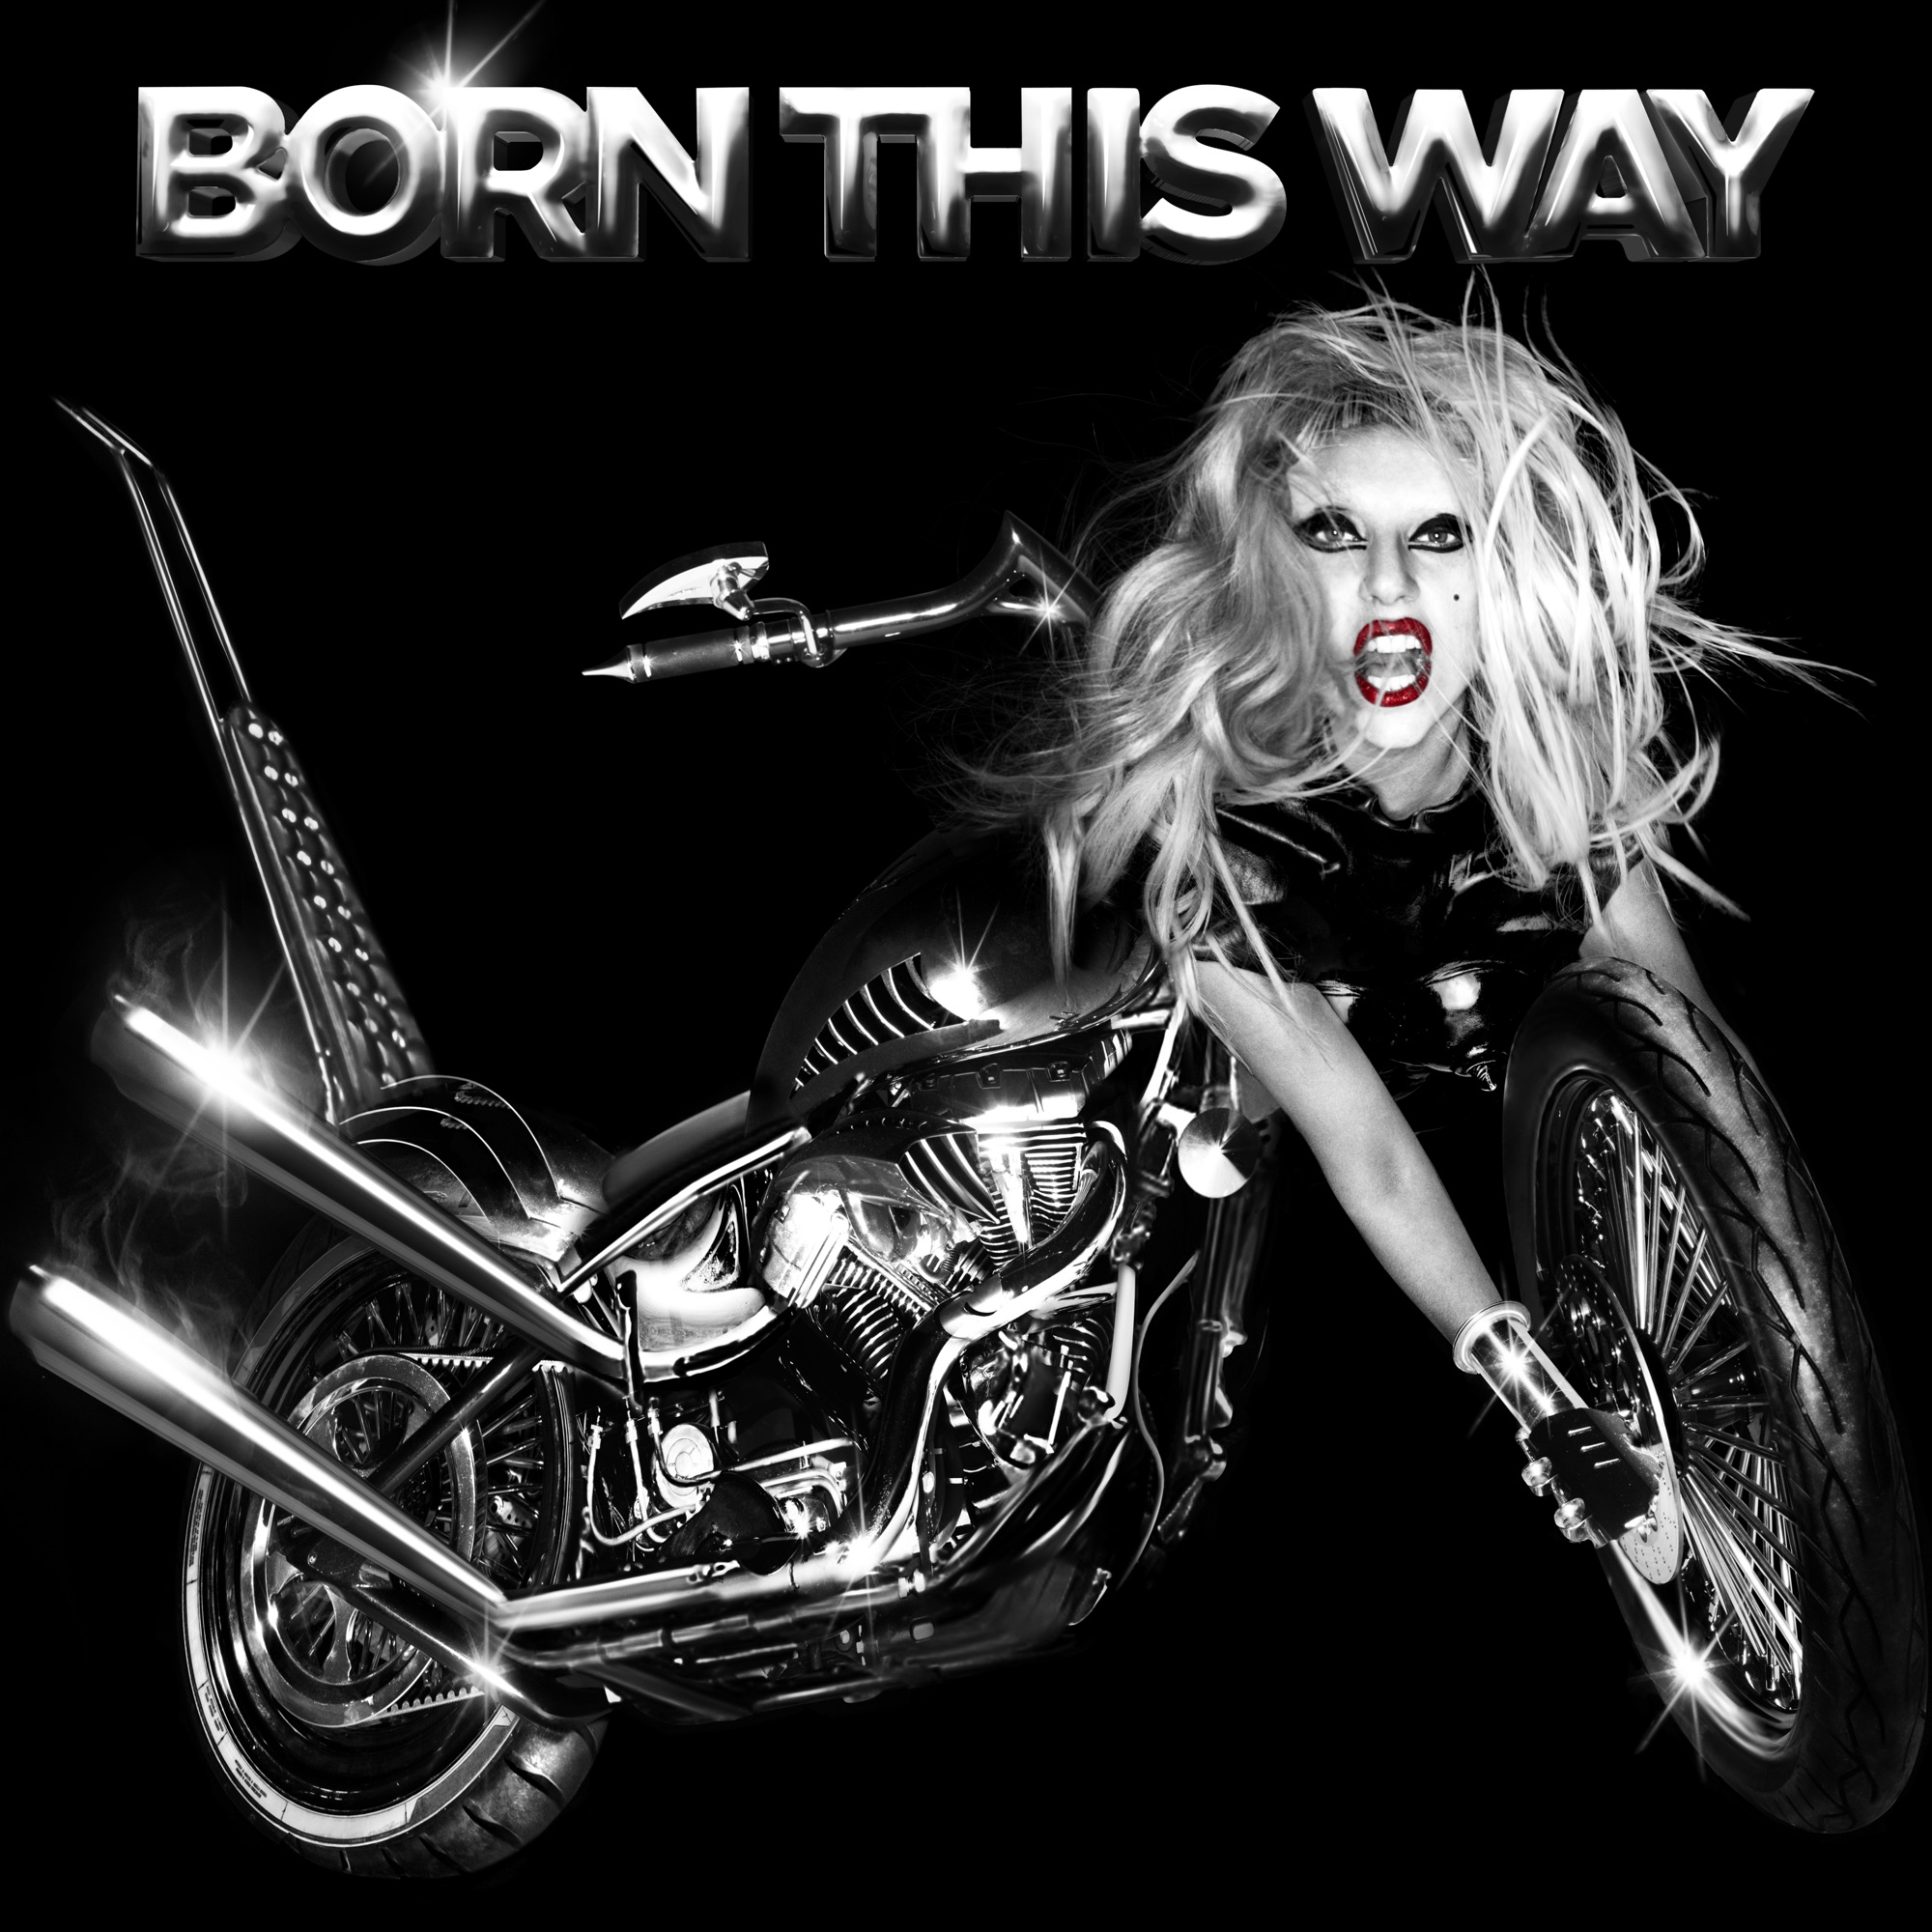 Capa do disco Born This Way, de Lady Gaga. A imagem está em preto e branco, apenas com o batom de Gaga em vermelho. Na parte superior, foi adicionado o texto “BORN THIS WAY”. Abaixo, foi adicionada uma montagem que mostra a cantora sendo metade humana, metade motocicleta. De seu corpo, a cabeça está onde deveria estar o guidão da moto, e os braços seguram a roda da frente.